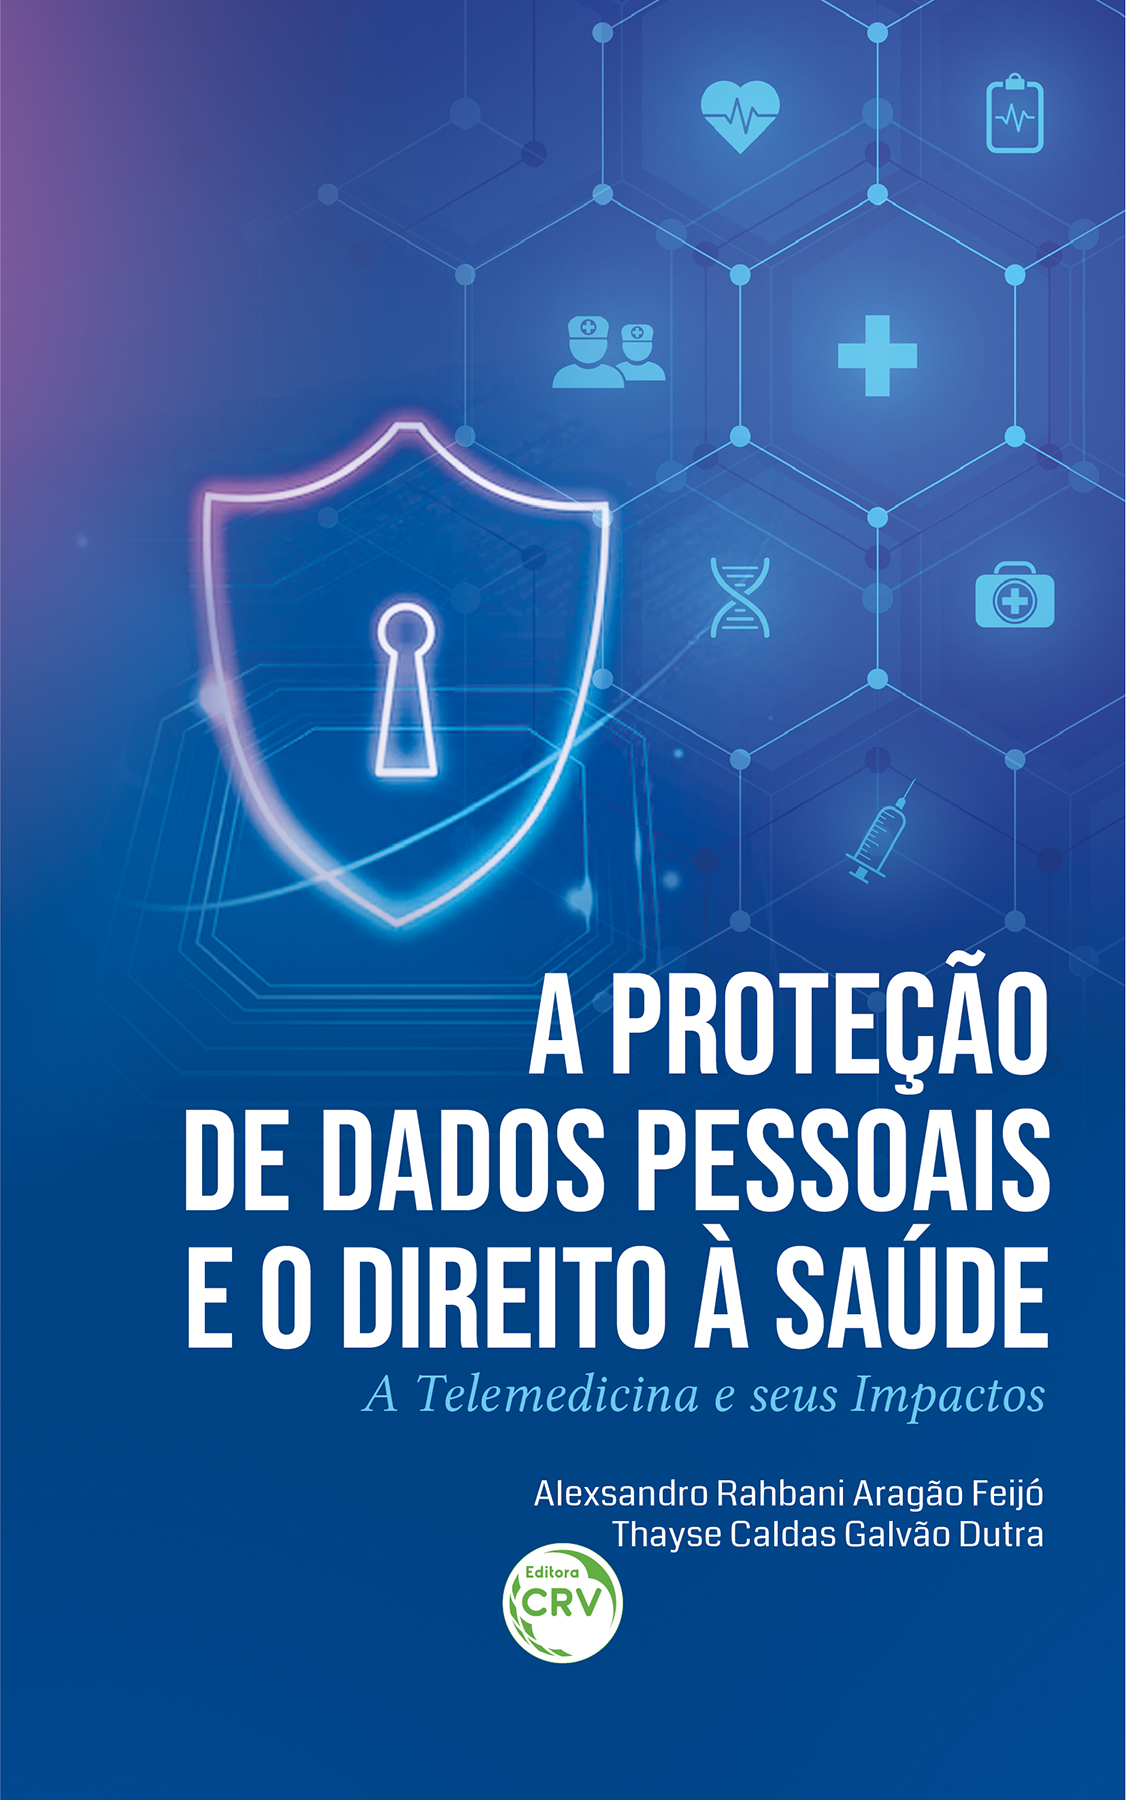 Capa do livro: A PROTEÇÃO DE DADOS PESSOAIS E O DIREITO À SAÚDE<br> a telemedicina e seus impactos